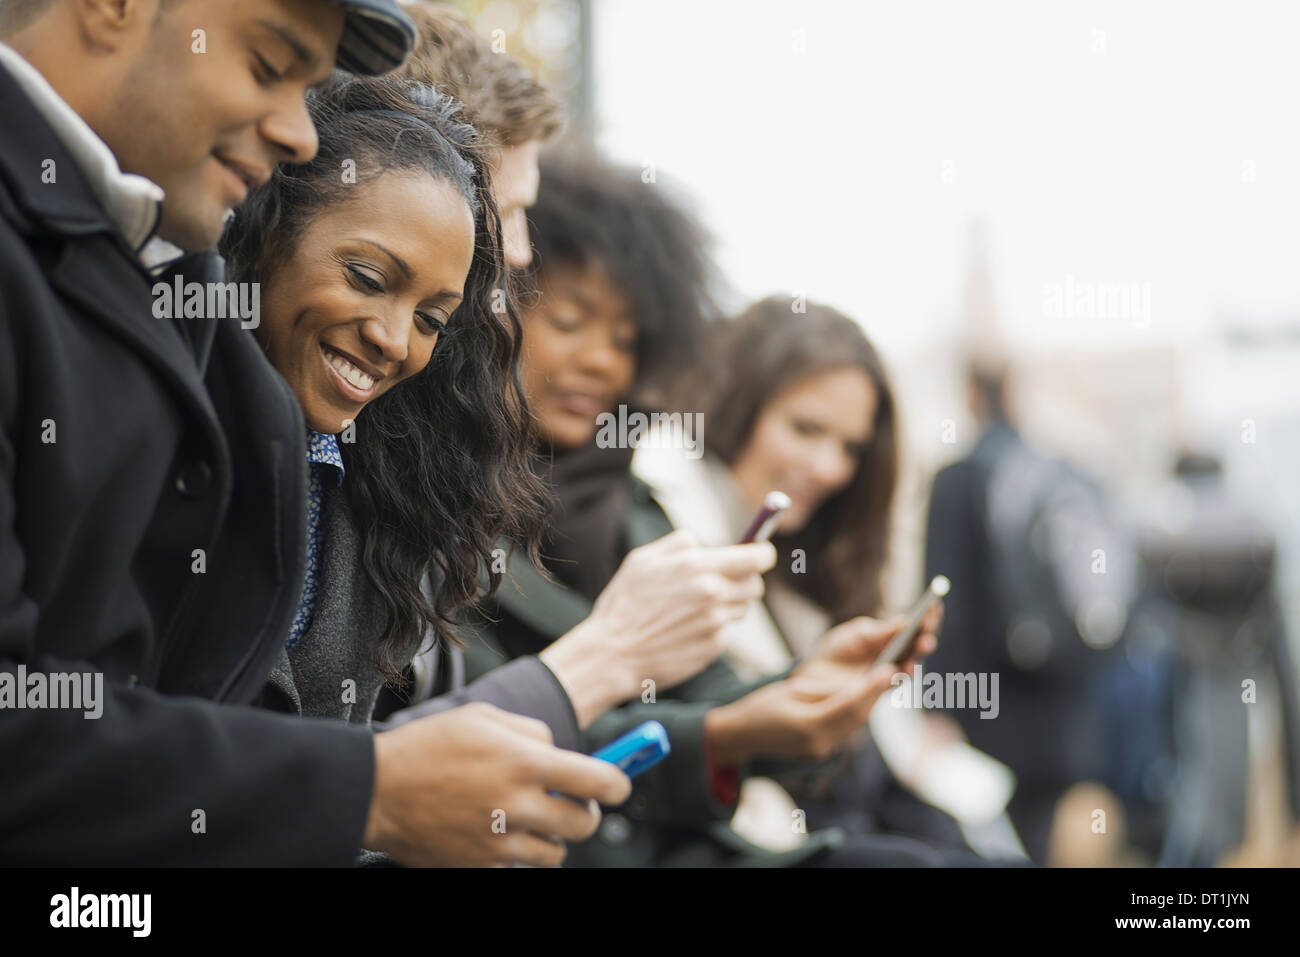 über die gehen Haltung in Kontakt mit Mobiltelefonen Männer und Frauen stehen in einer Linie auf der Suche, und lachen Stockfoto